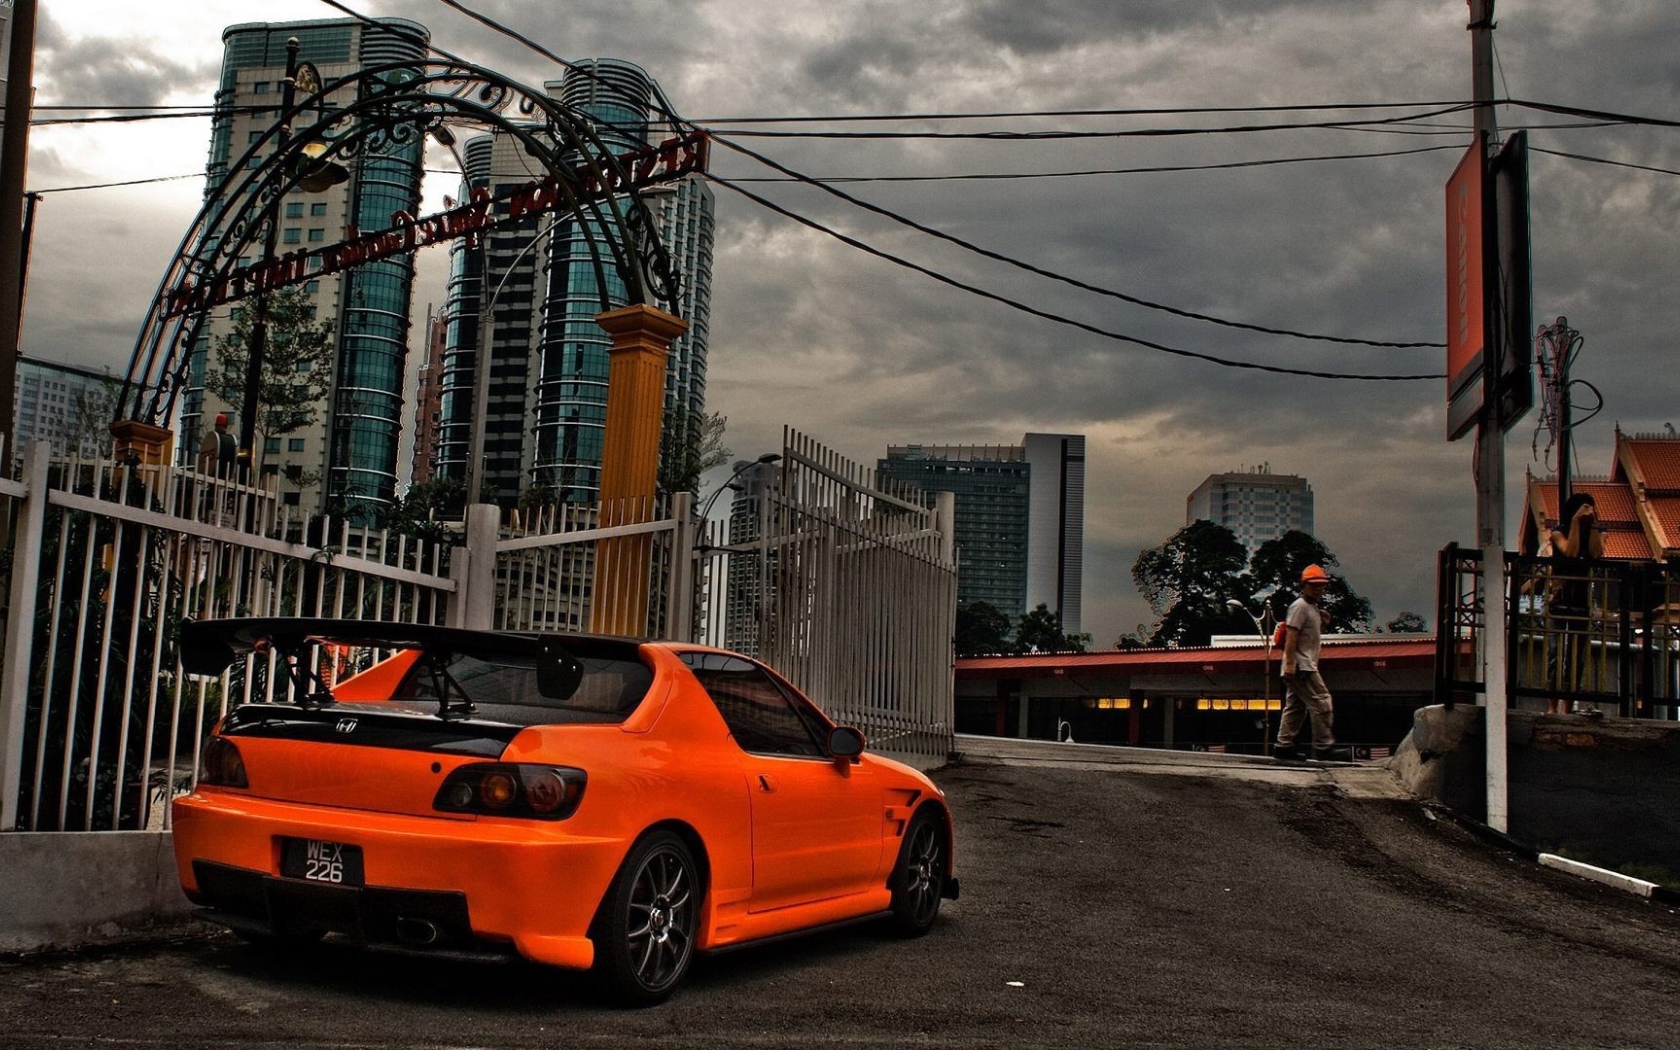 Оранжевая Хонда припаркована в городе